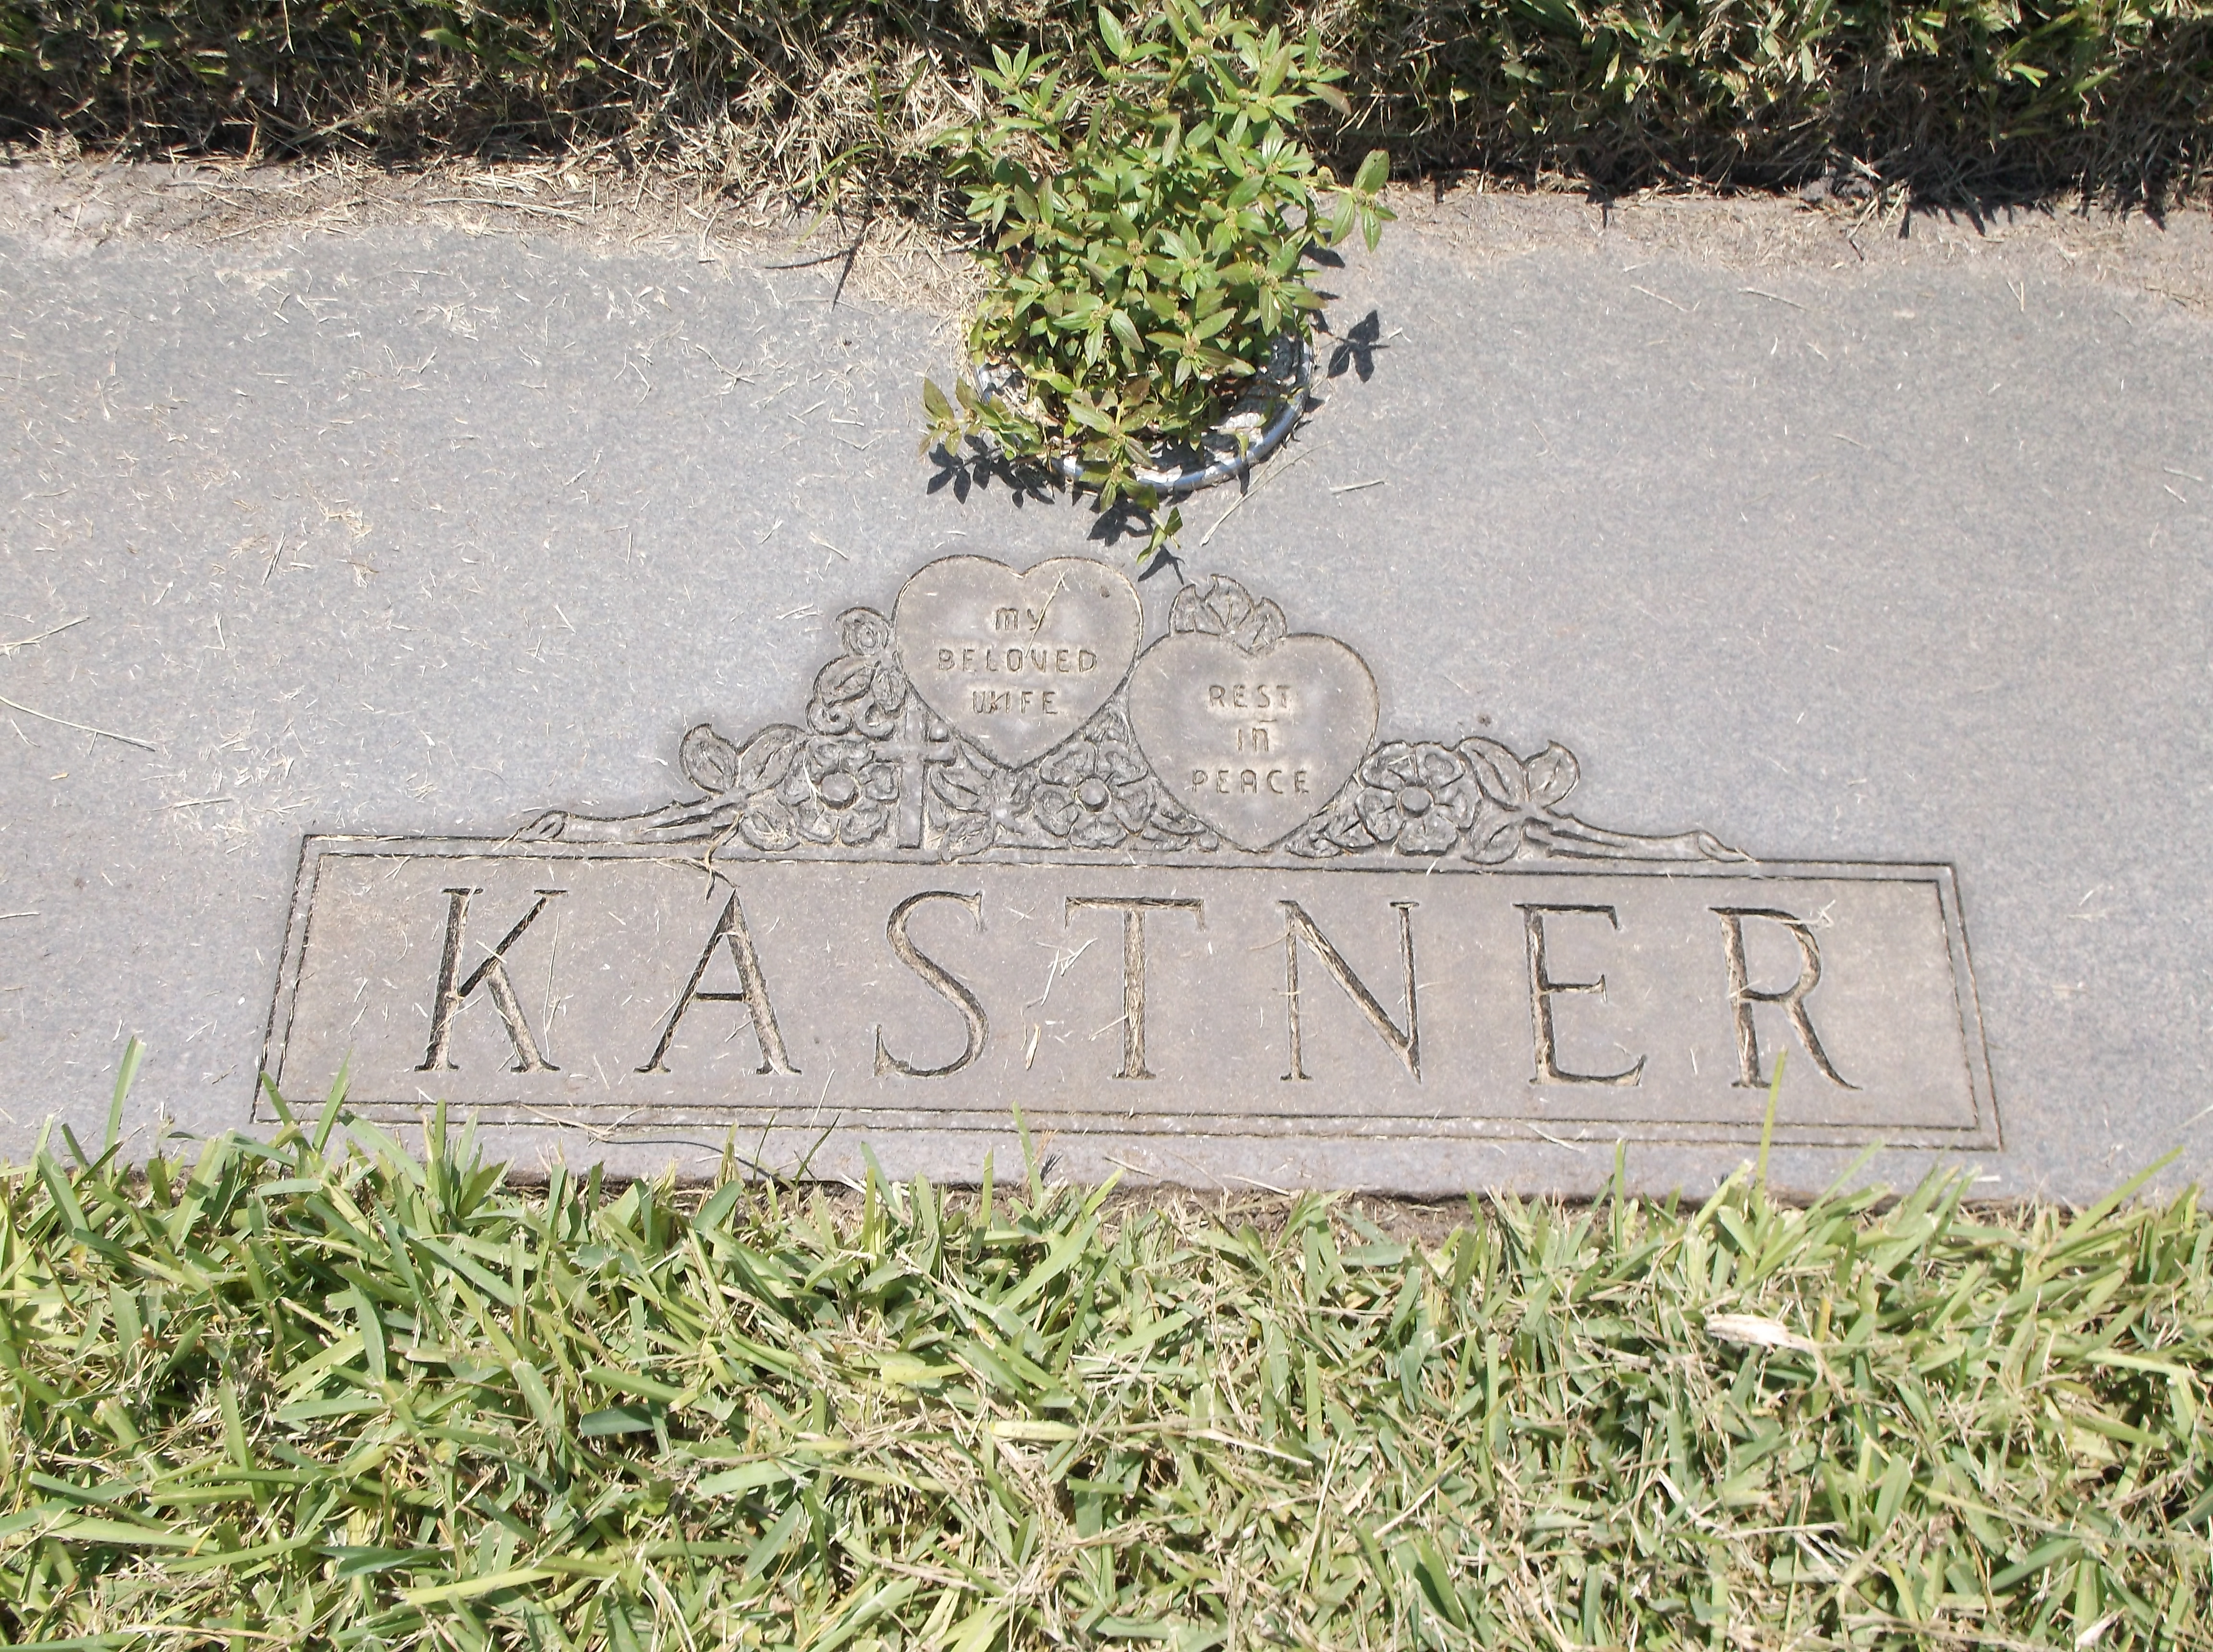 Daisy V Kastner